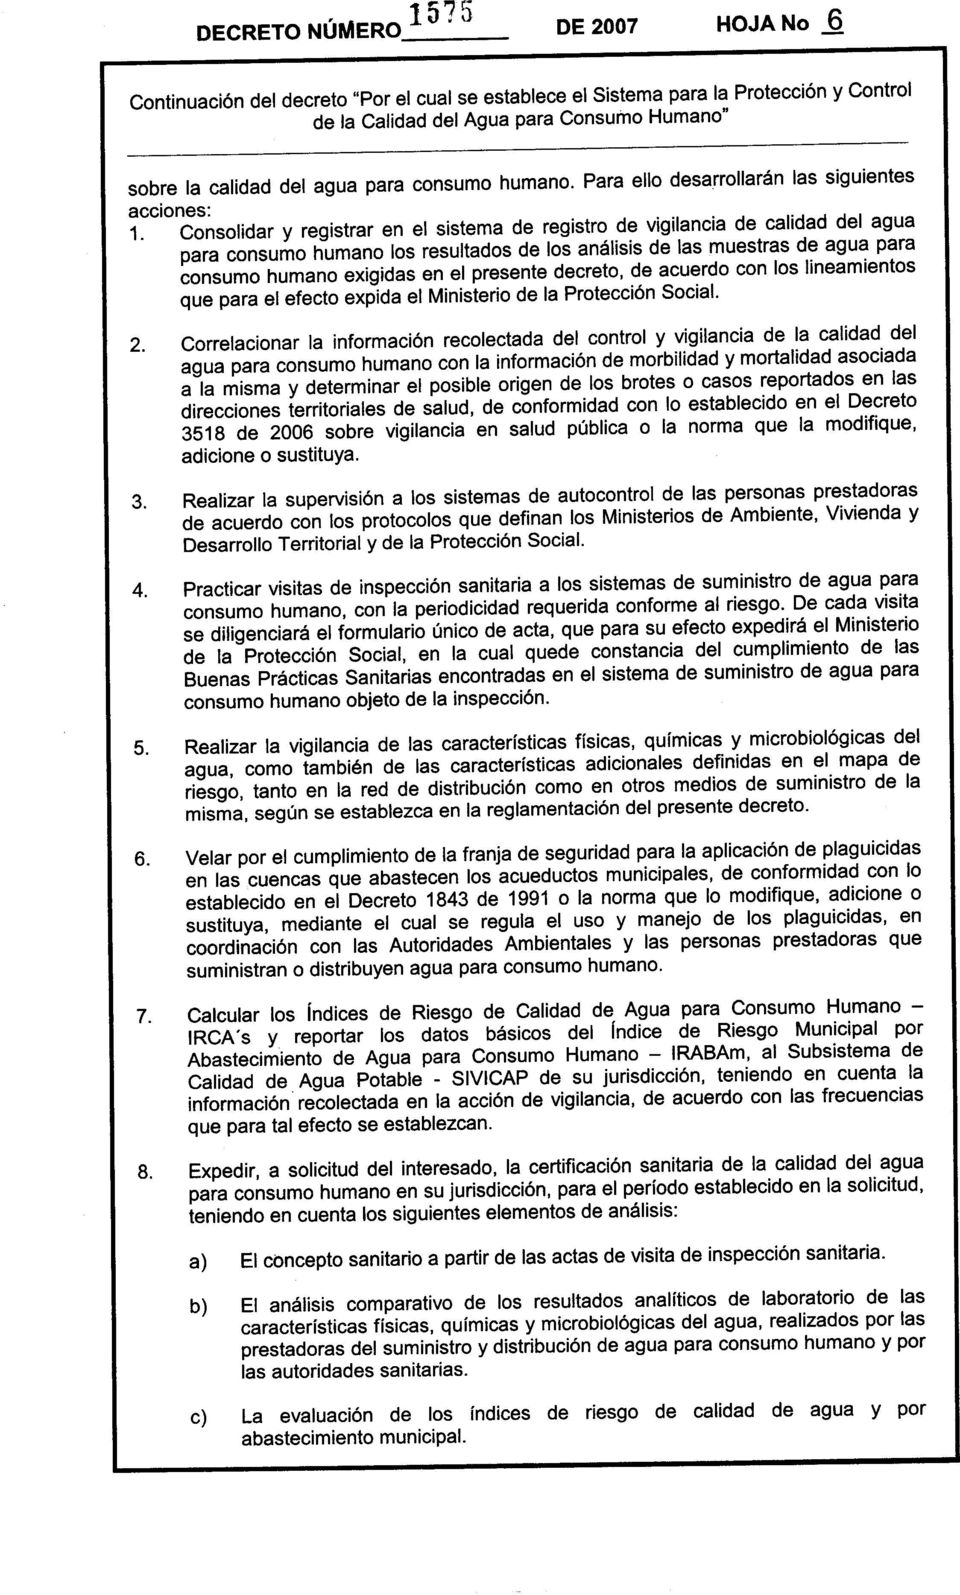 presente decreto, de acuerdo con los Iineamientos que para el efecto expida el Ministerio de la Protección Social. 2.